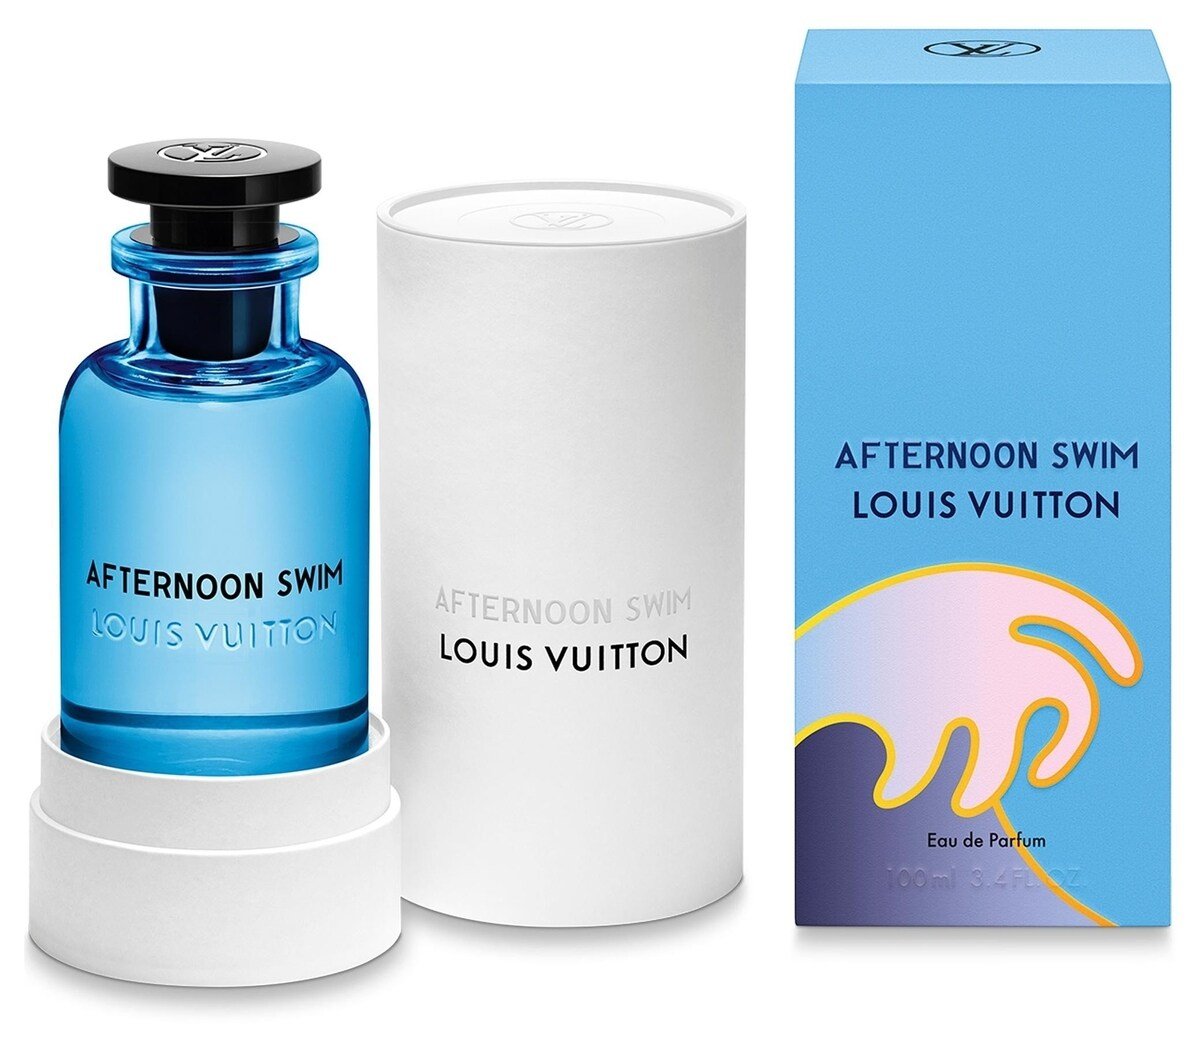 Afternoon Swim von Louis Vuitton » Meinungen & Duftbeschreibung